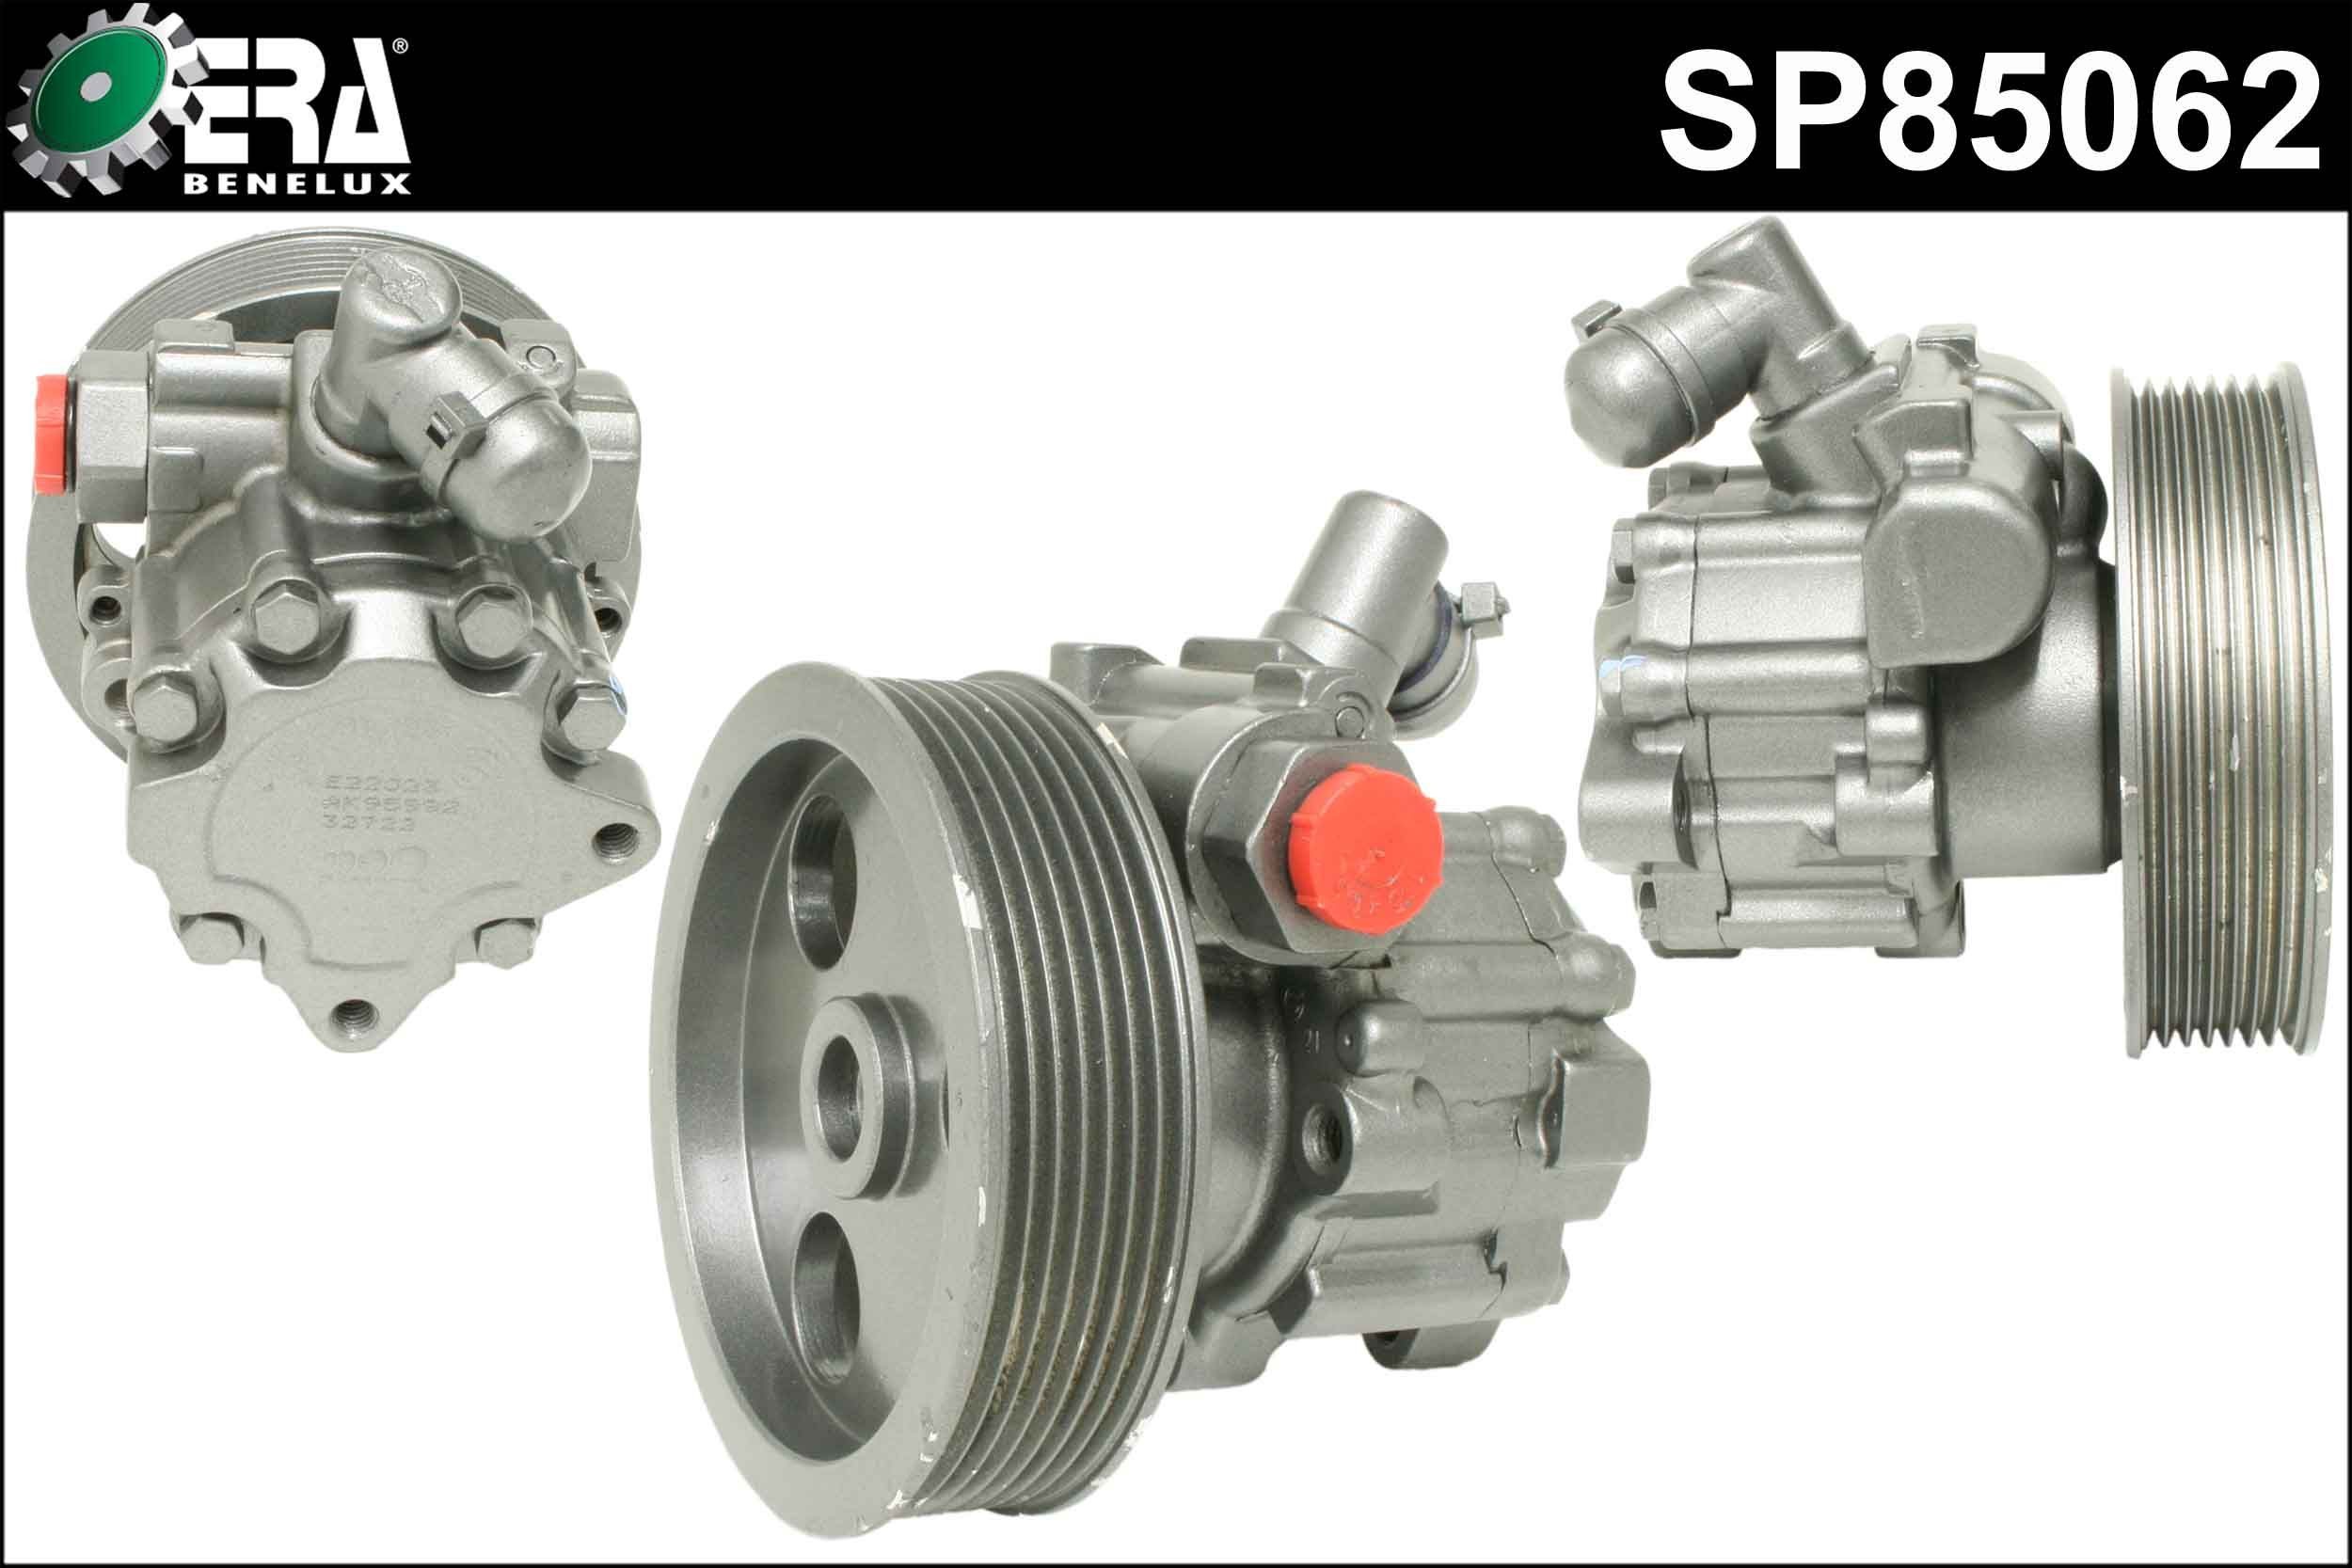 ERA Benelux SP85062 Power steering pump W164 ML 300 CDI 3.0 4-matic 204 hp Diesel 2010 price